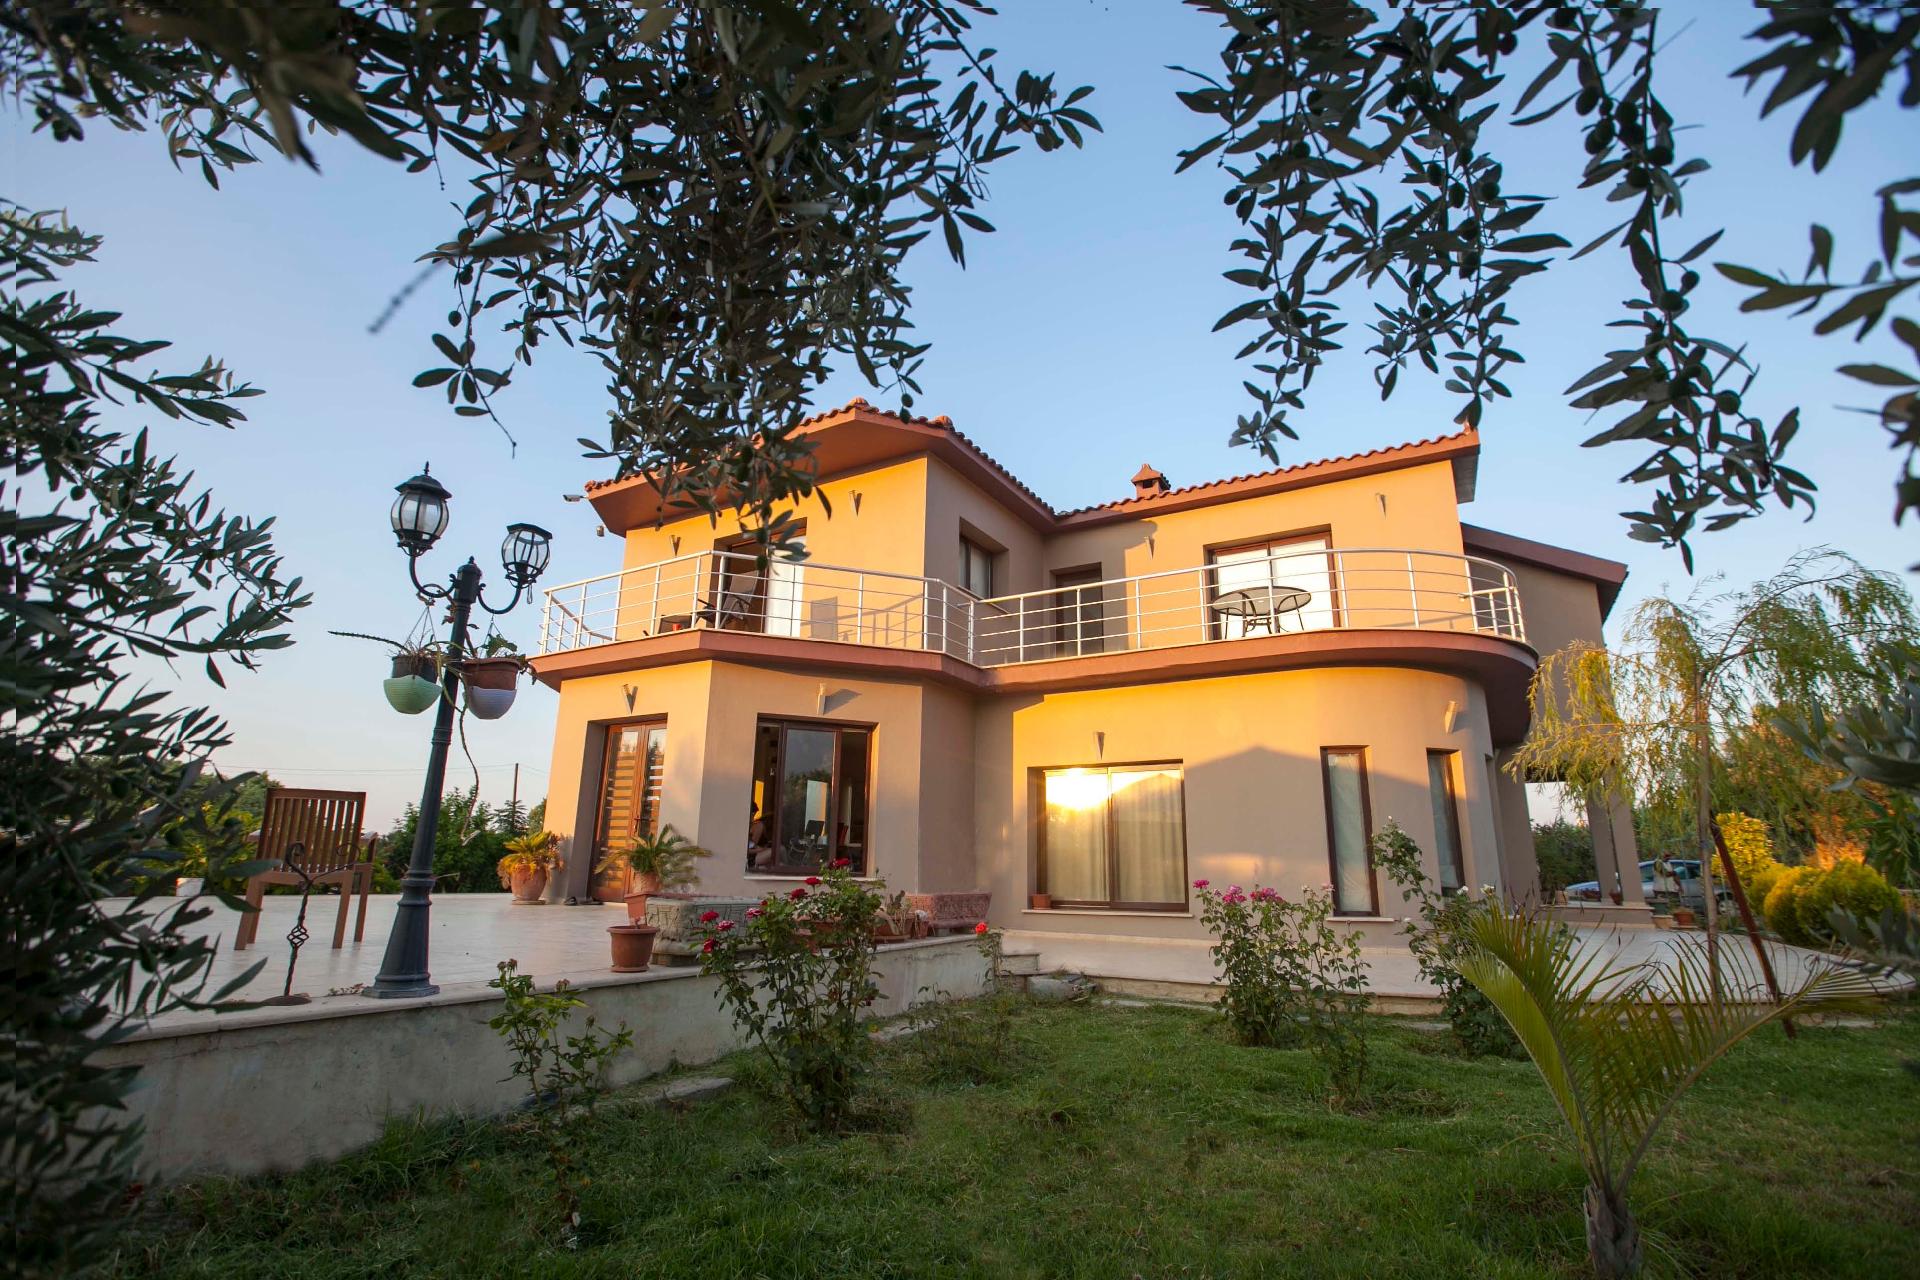 Ferienhaus mit Privatpool für 11 Personen  +  Ferienhaus in Zypern